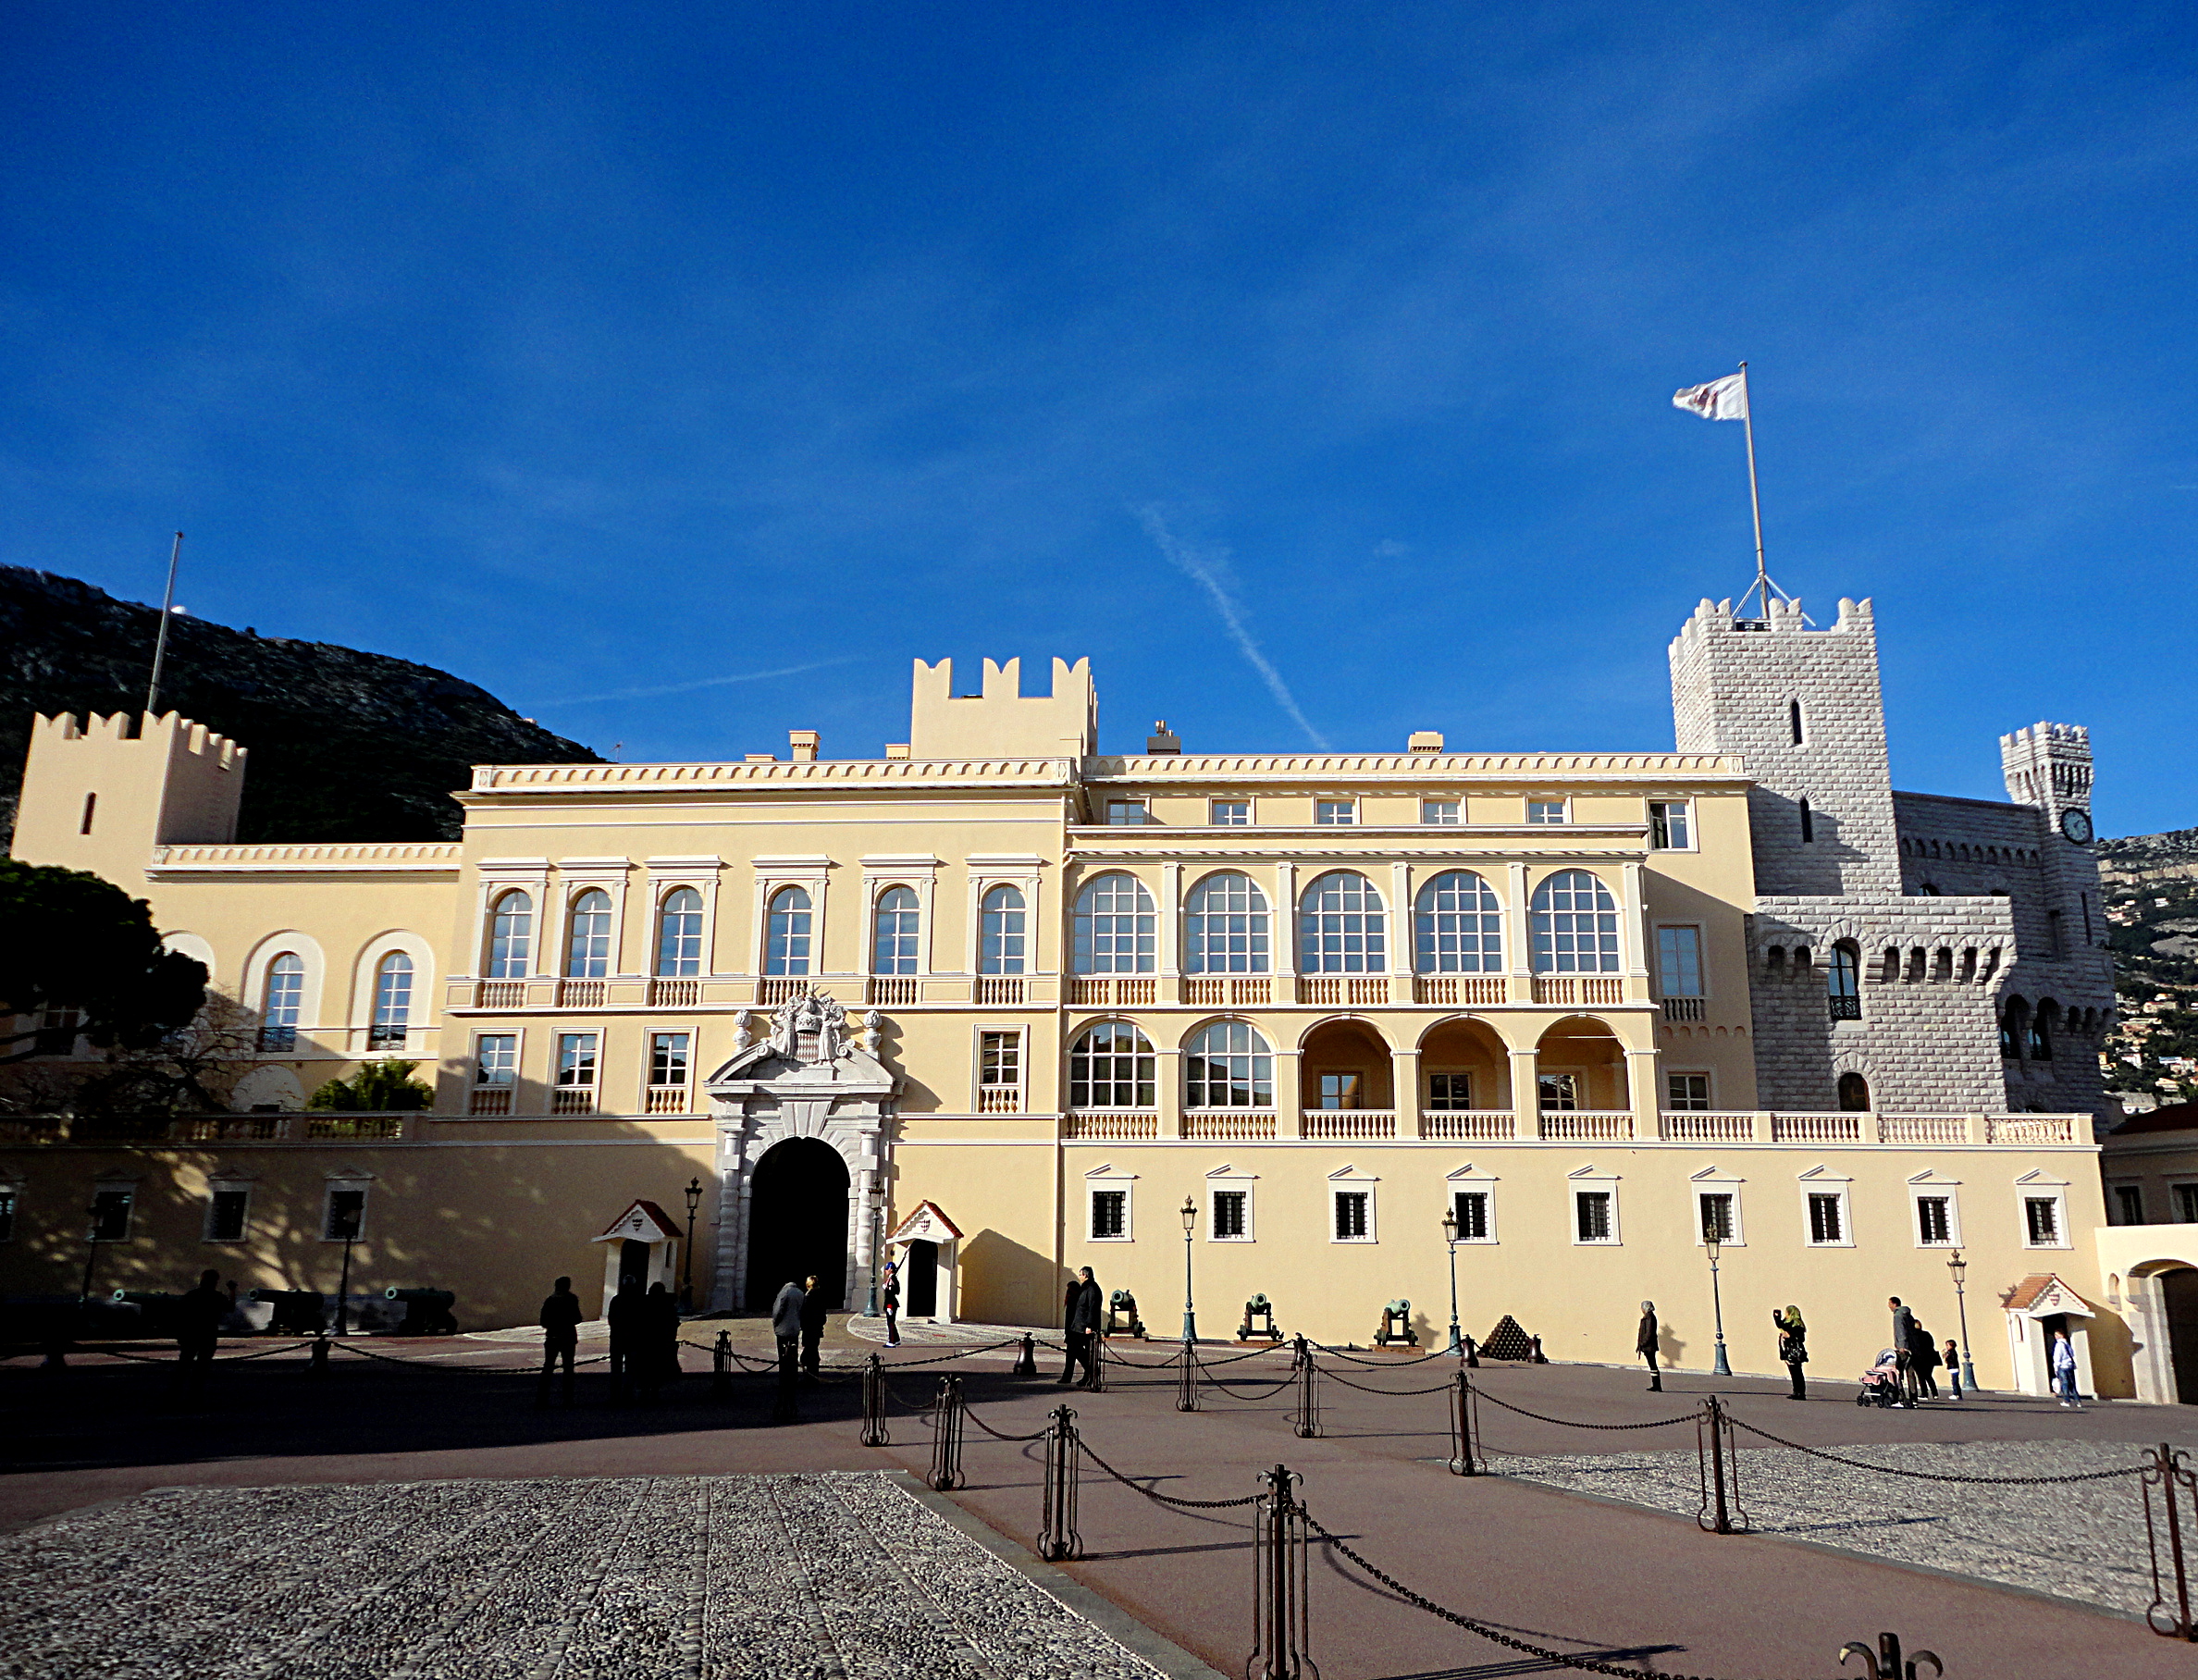 Княжеский дворец Монако